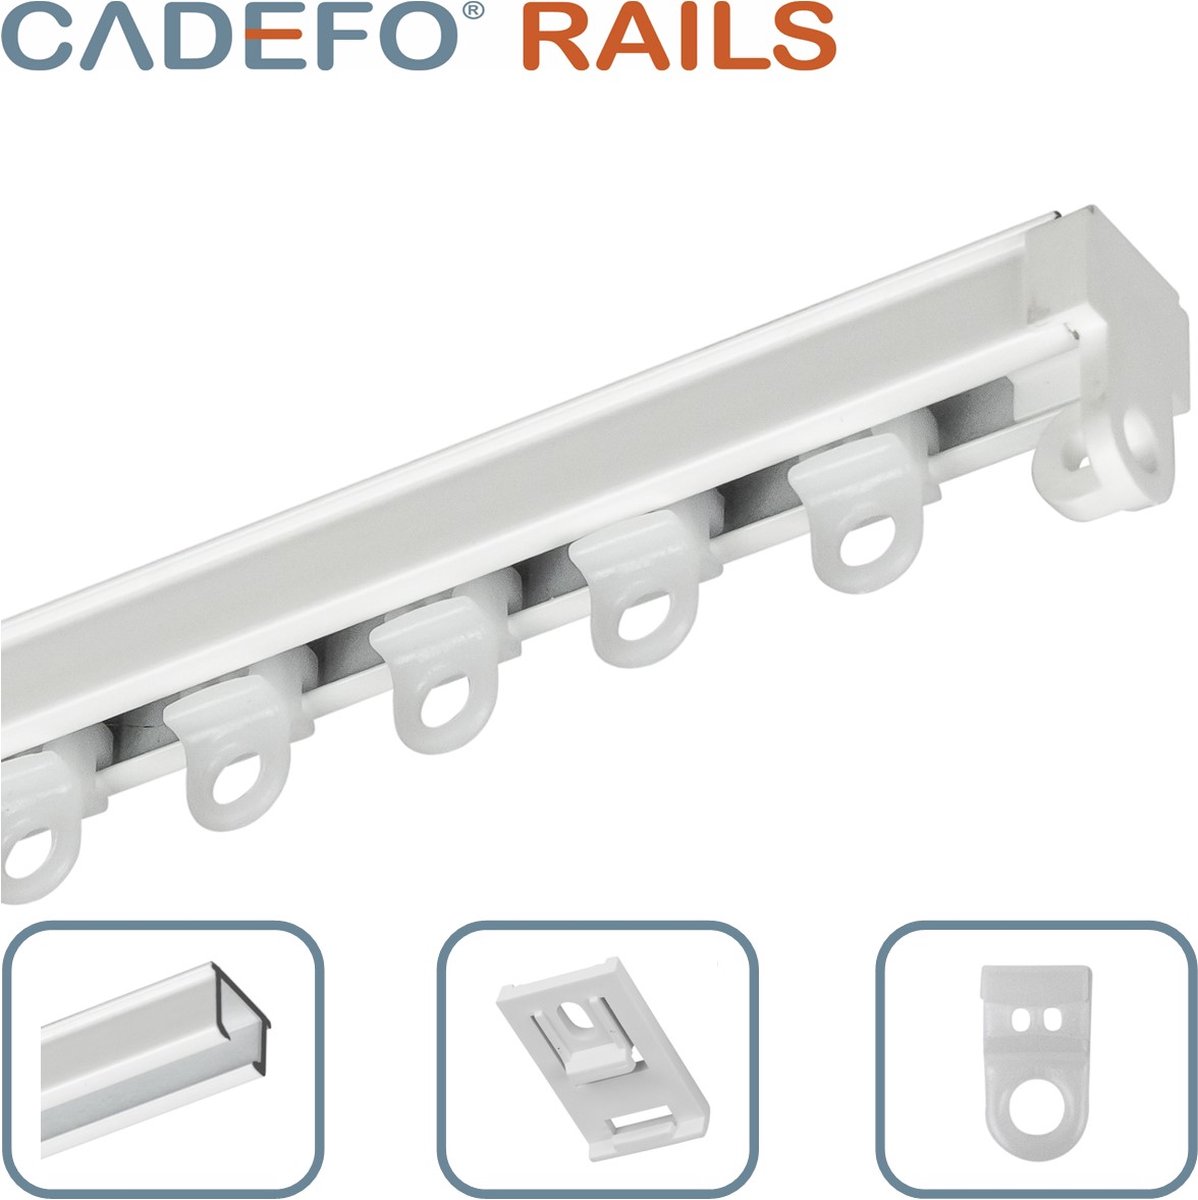 CADEFO RAILS (551 - 600 cm) Gordijnrails - Compleet op maat! - UIT 1 STUK - Leverbaar tot 6 meter - Plafondbevestiging - Lengte 577 cm